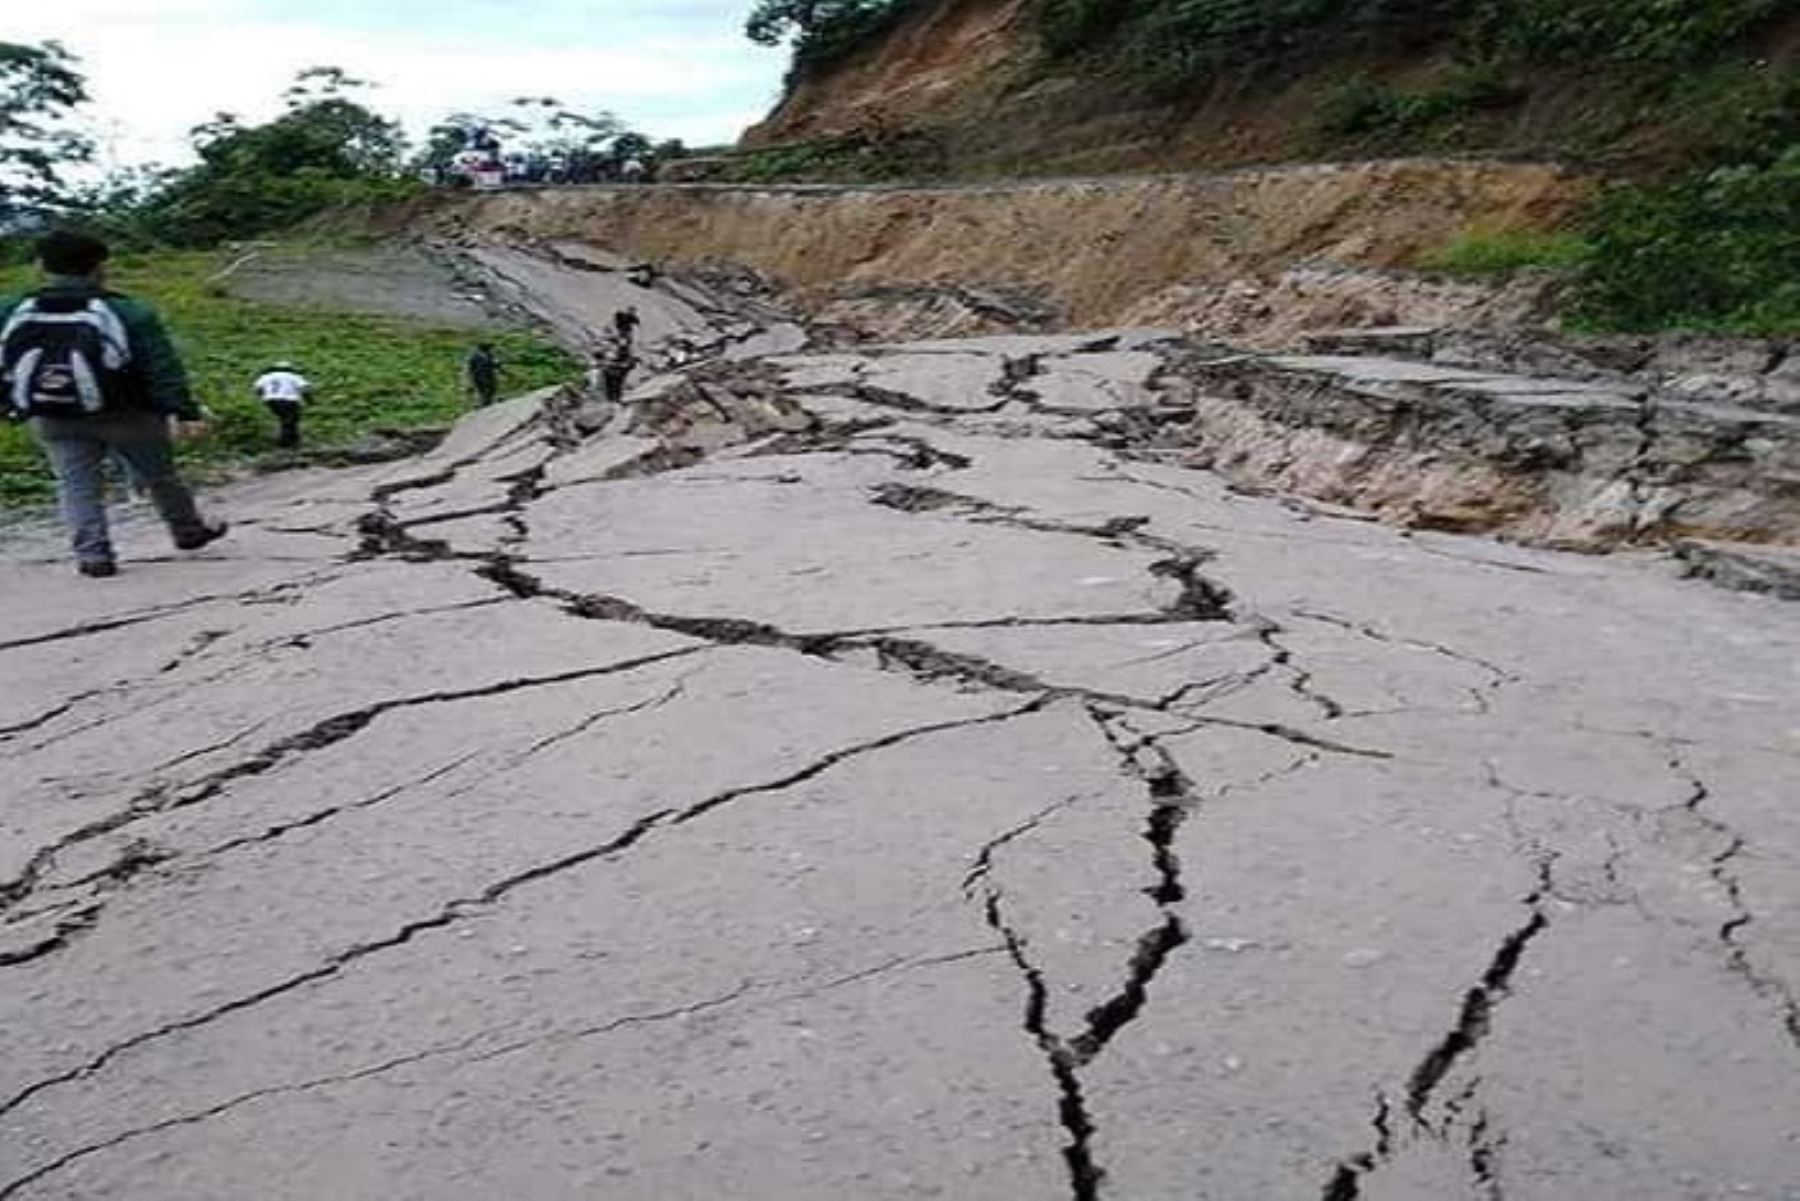 Aproximadamente 200 metros de la carretera Fernando Belaunde Terry en la zona de Nuevo San Martín, entre Juanjuí y Tocache, al sur de la región San Martín, colapsó aparentemente por la filtración de agua en las bases producto de la gran cantidad de lluvia que se registró.